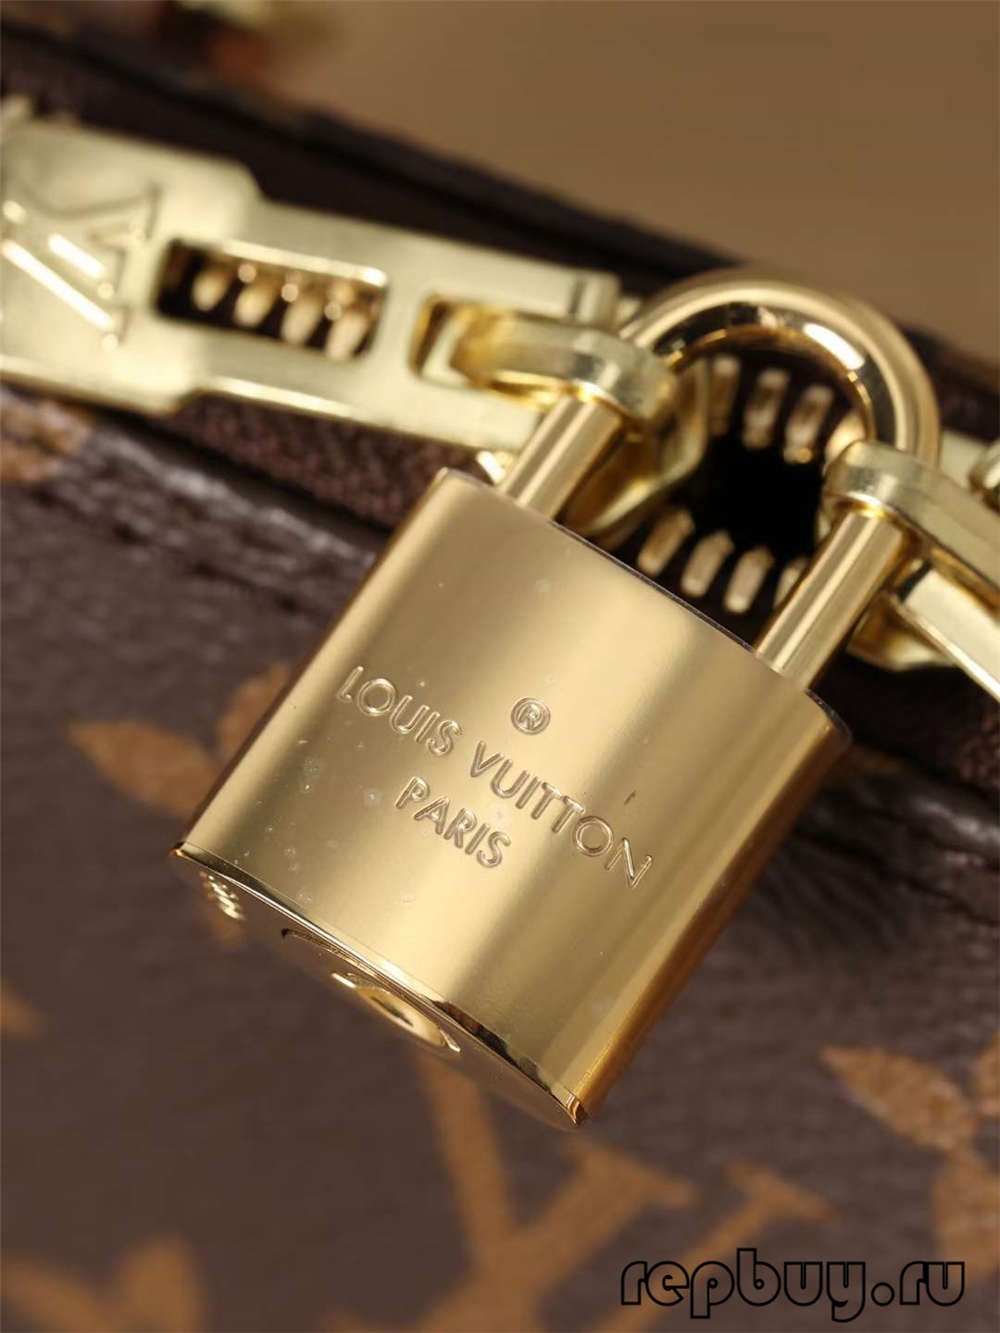 Louis Vuitton M53152 Alma BB အရည်အသွေးမြင့် ပုံတူအိတ်များ (2022 နောက်ဆုံးထွက်)- အကောင်းဆုံး အရည်အသွေး အတု Louis Vuitton Bag အွန်လိုင်းစတိုး၊ ပုံစံတူ ဒီဇိုင်နာအိတ် ru